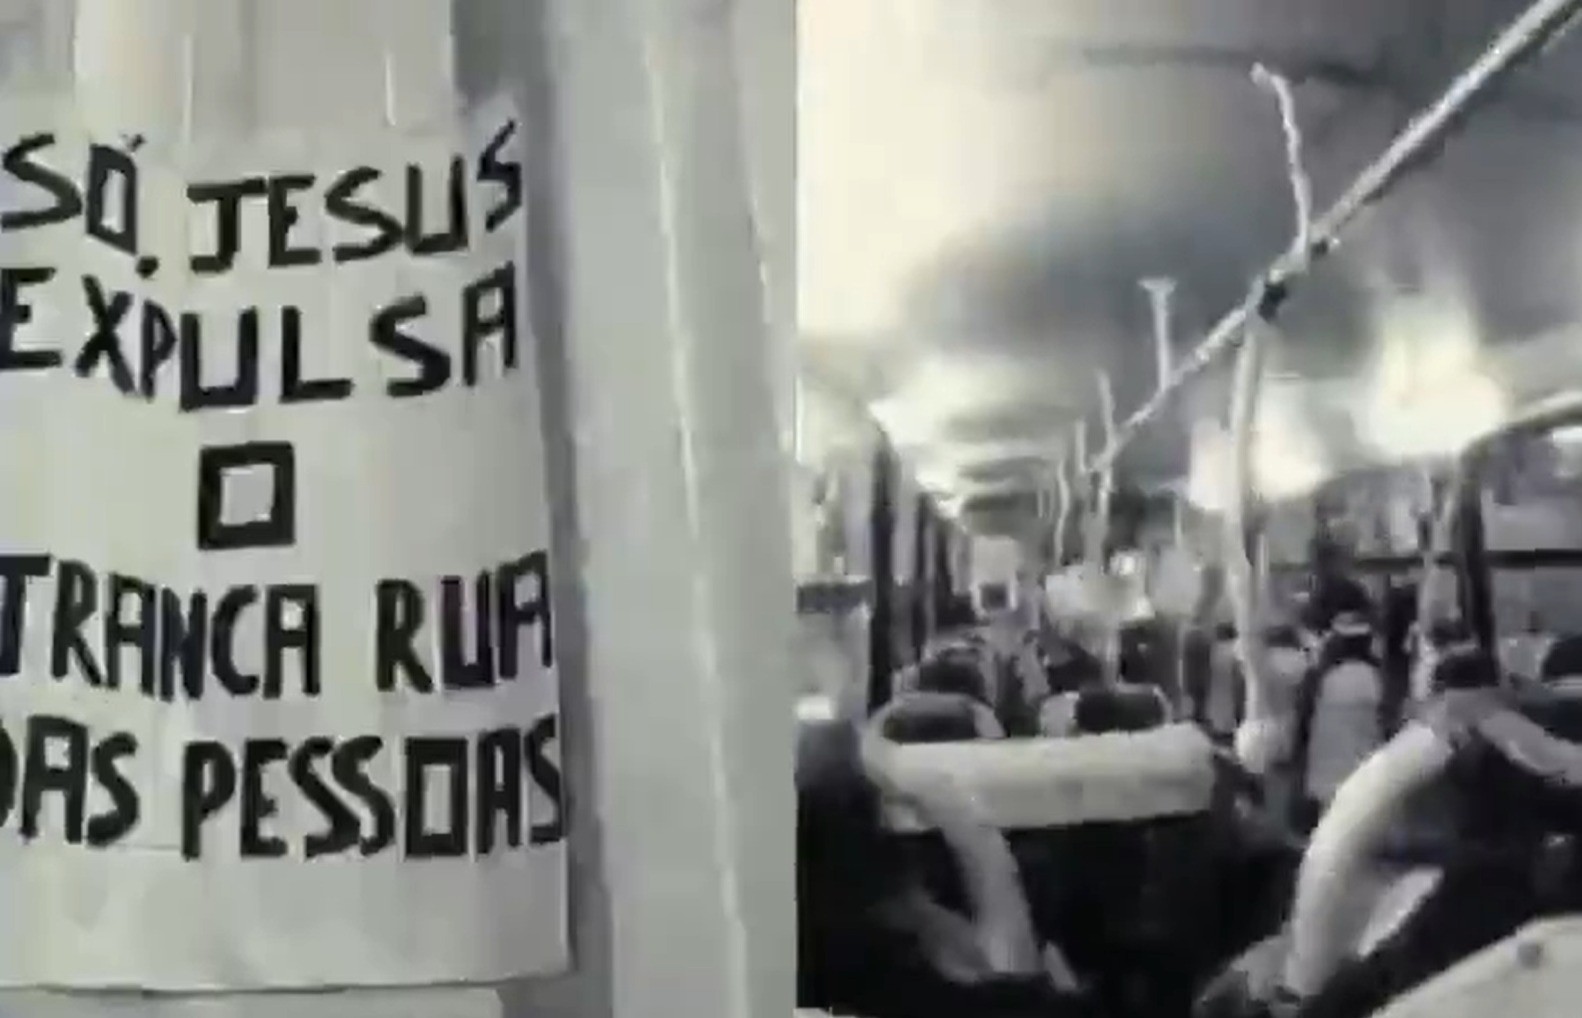 Jesus e Tranca Ruas: babalaô e deputado entram com ações contra vídeo em show de Ludmilla nos EUA